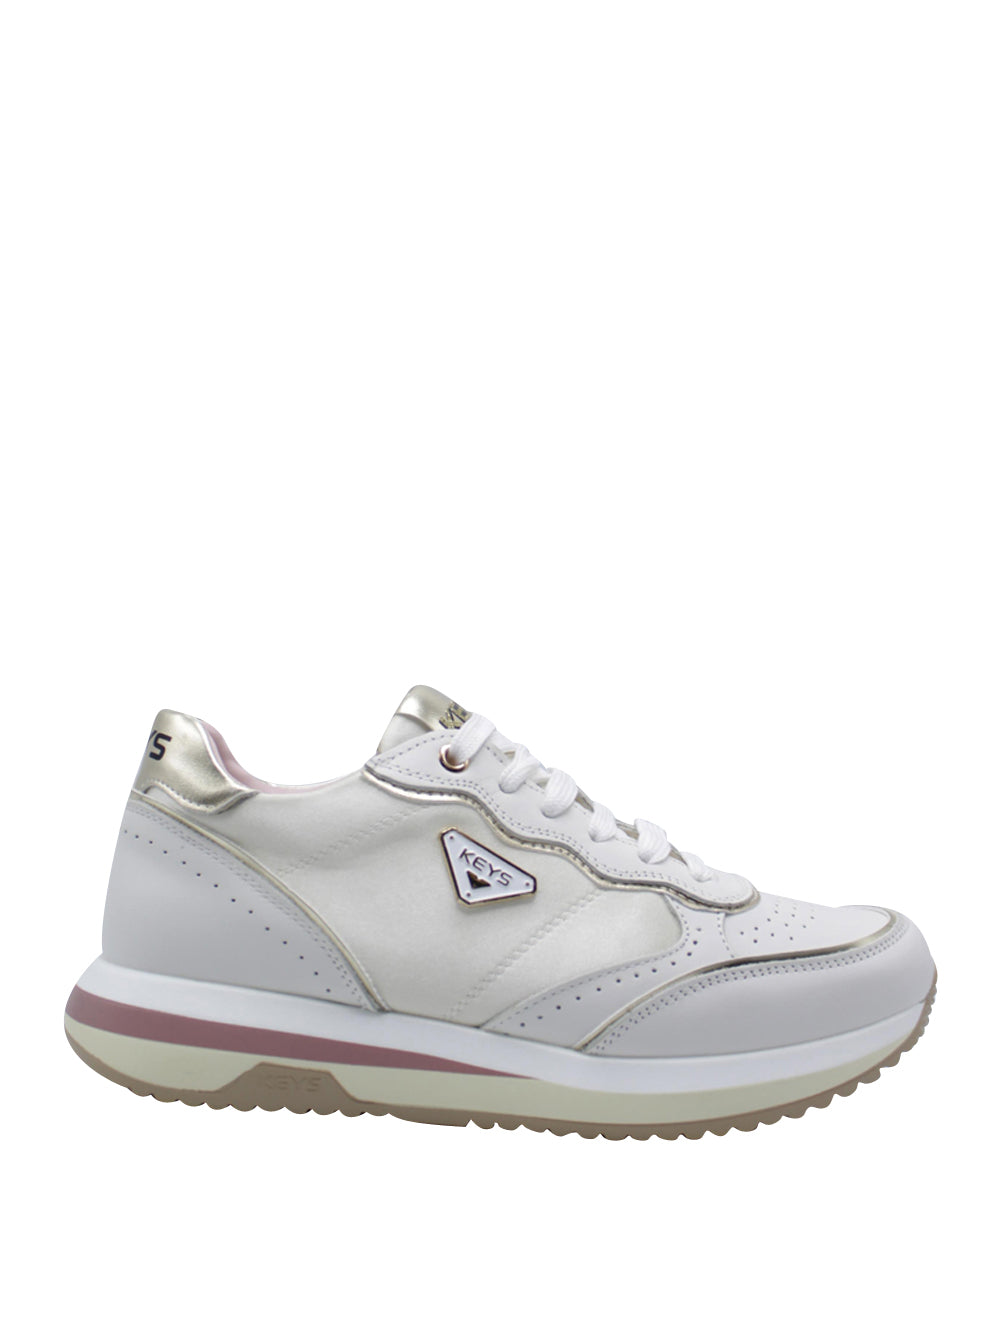 KEY'S Sneakers Donna - Bianco modello 9232